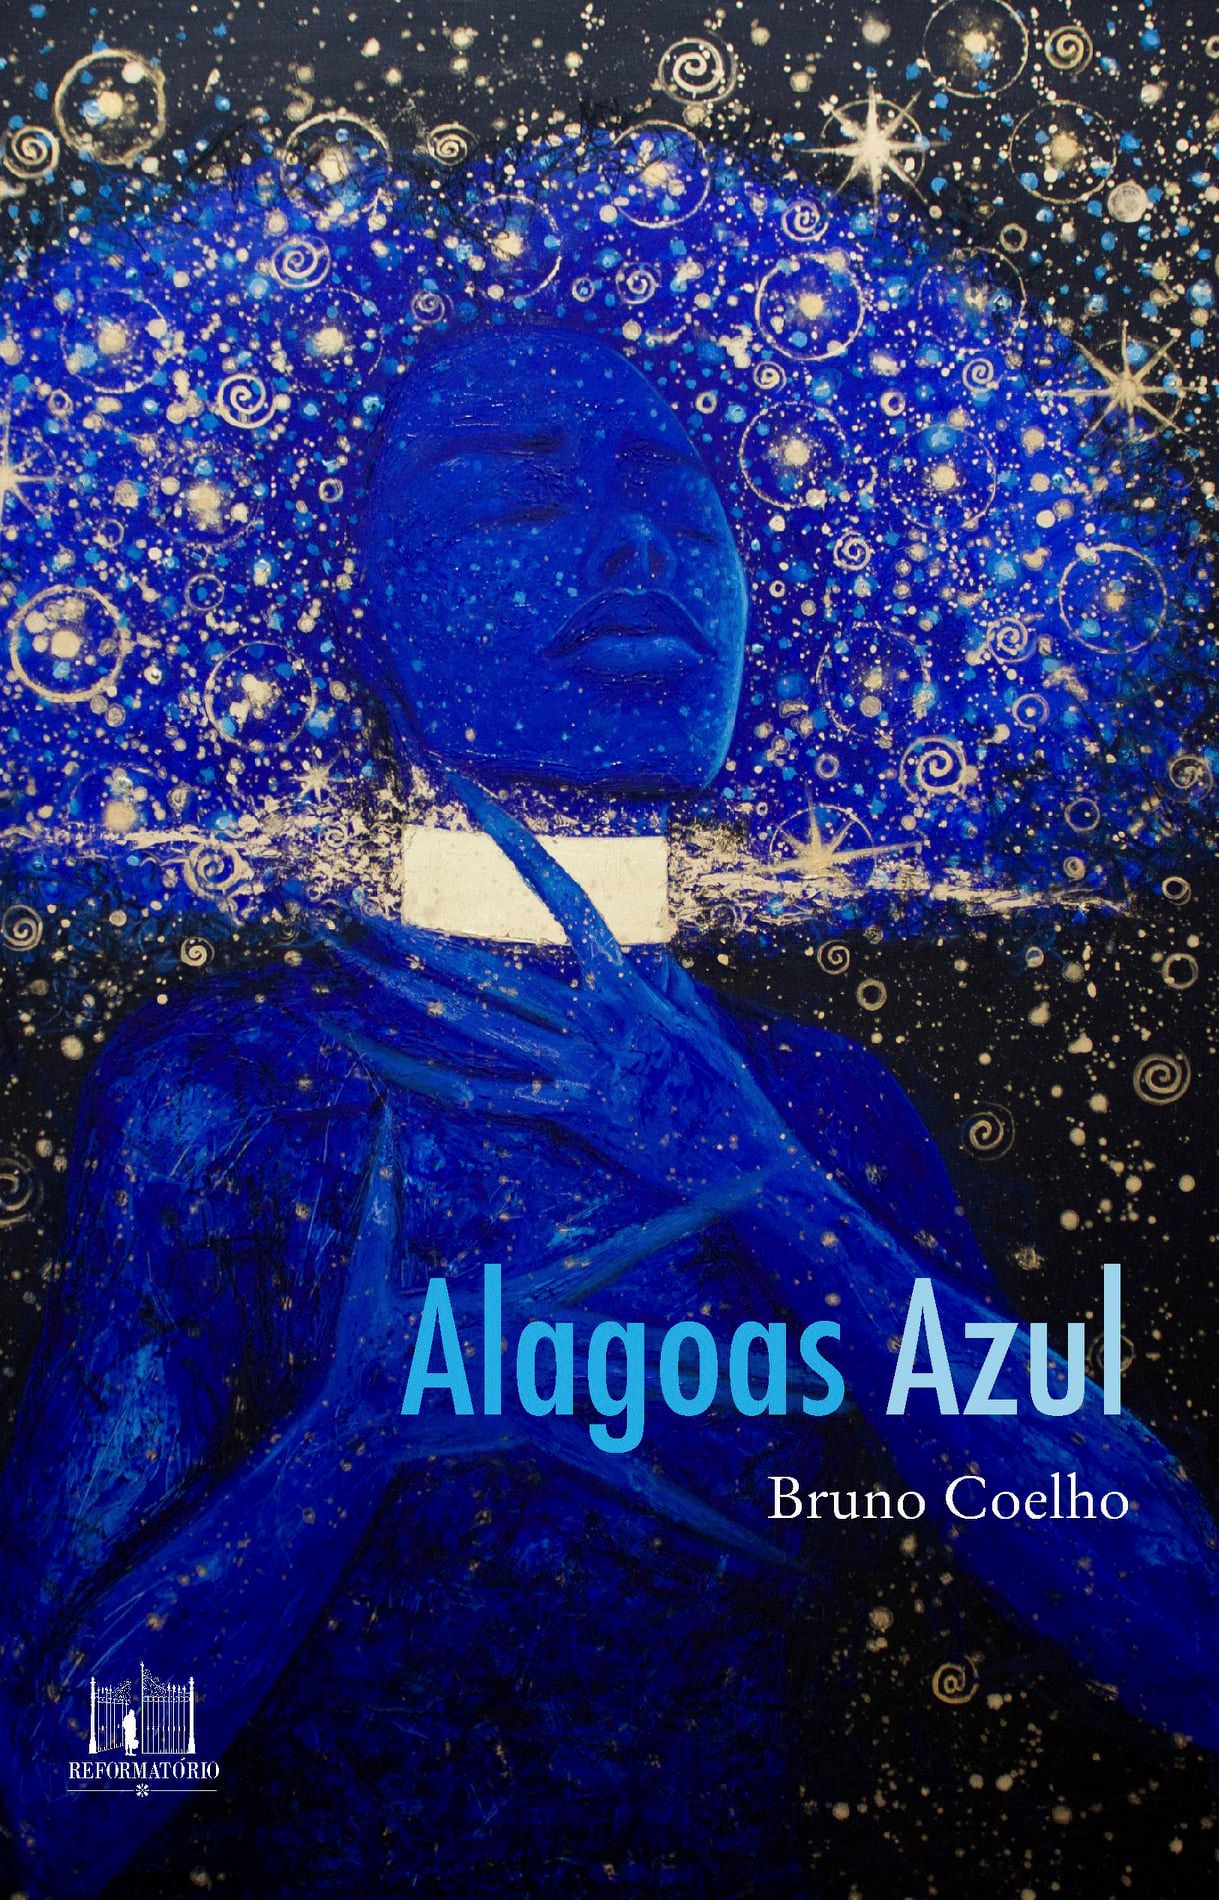 Bruno Coelho - Romance 'Alagoas Azul' faz da viagem um roteiro de marcações internas sobre liberdade e pertencimento | por Fernando Andrade